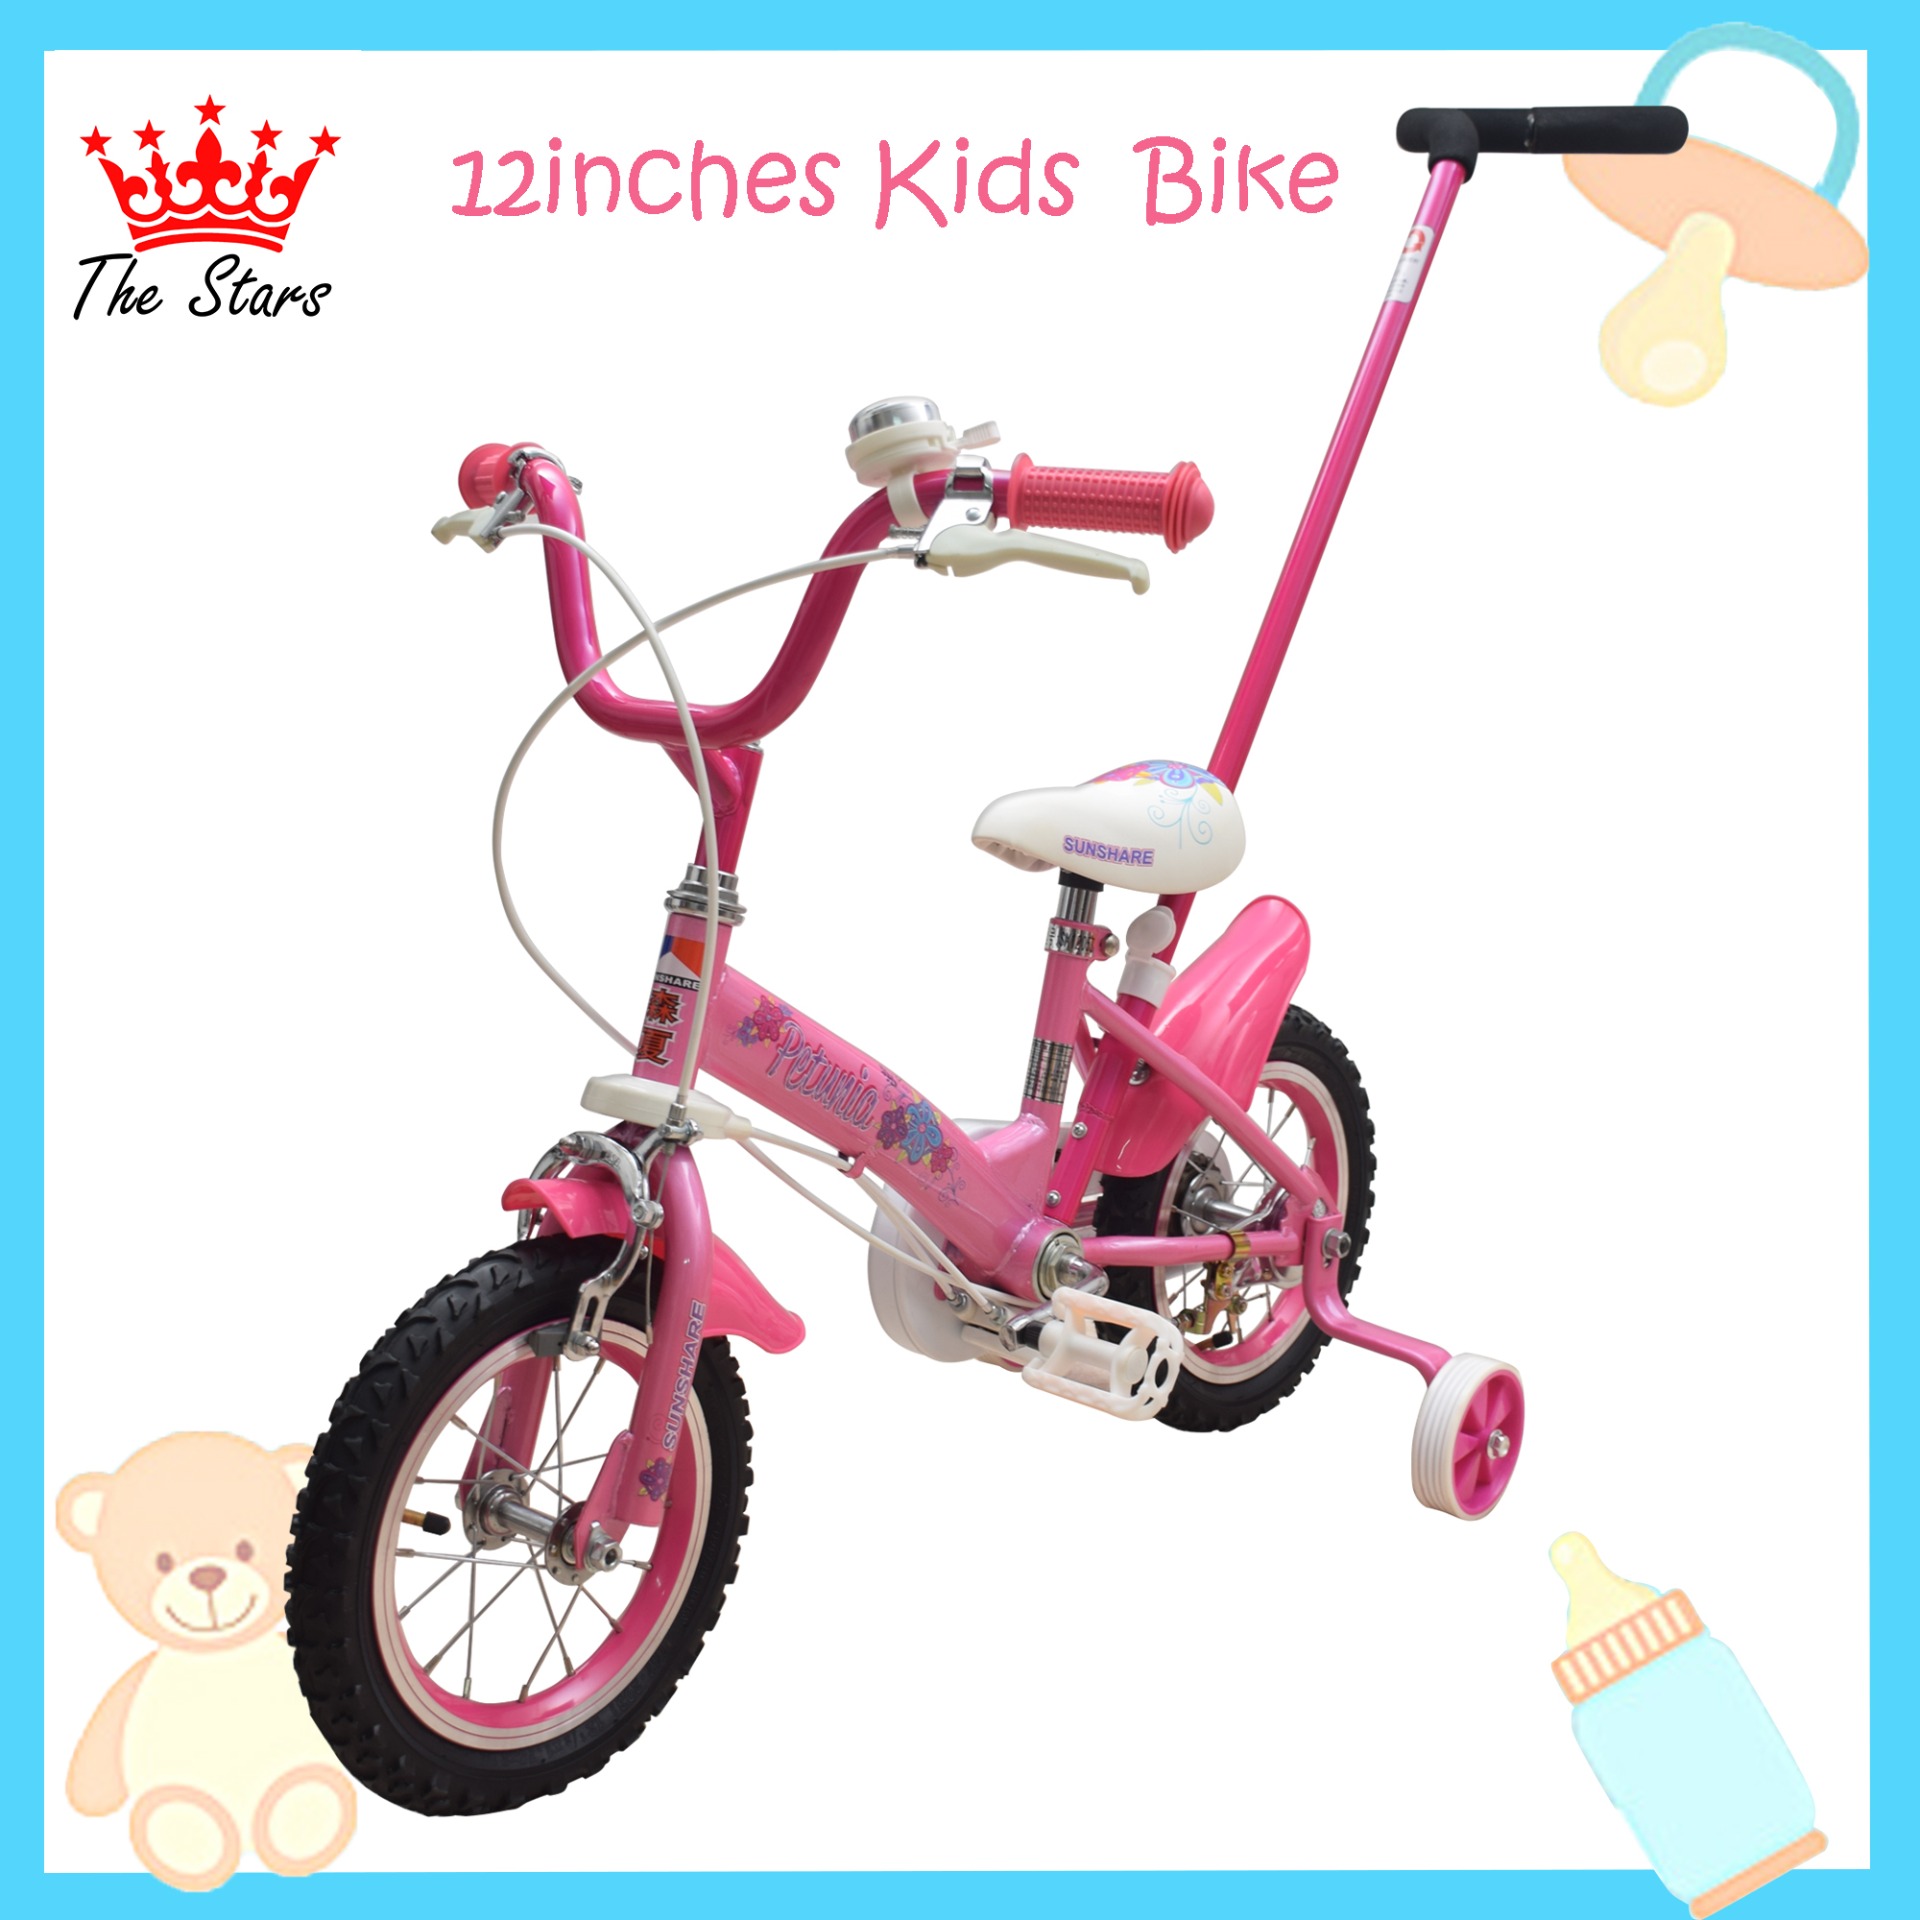 pink used bikes